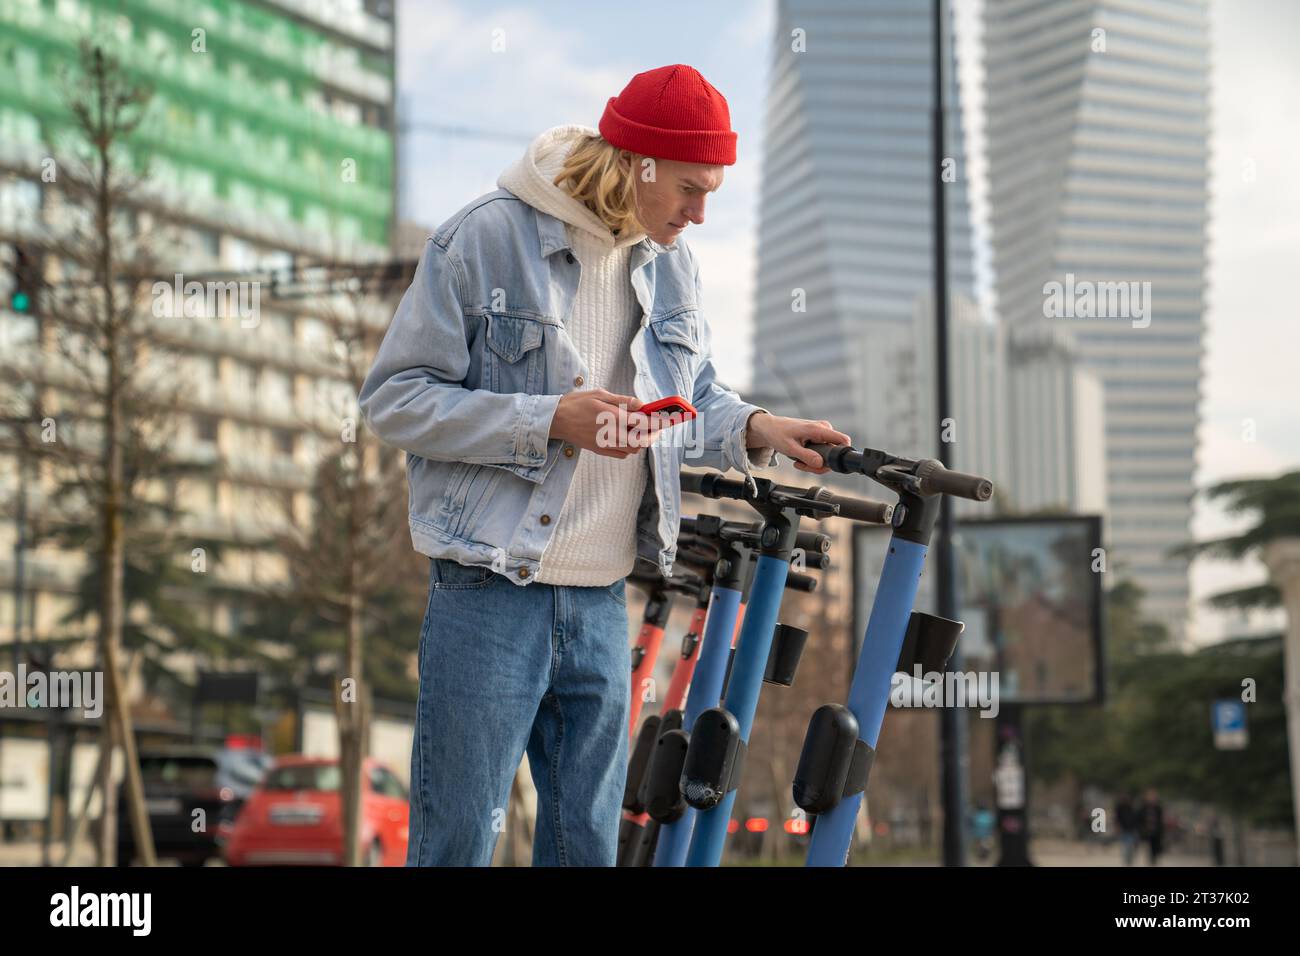 Trendiger Teenager mit mobiler App, um E-Scooter zu mieten, der auf dem Straßenparkplatz steht Stockfoto